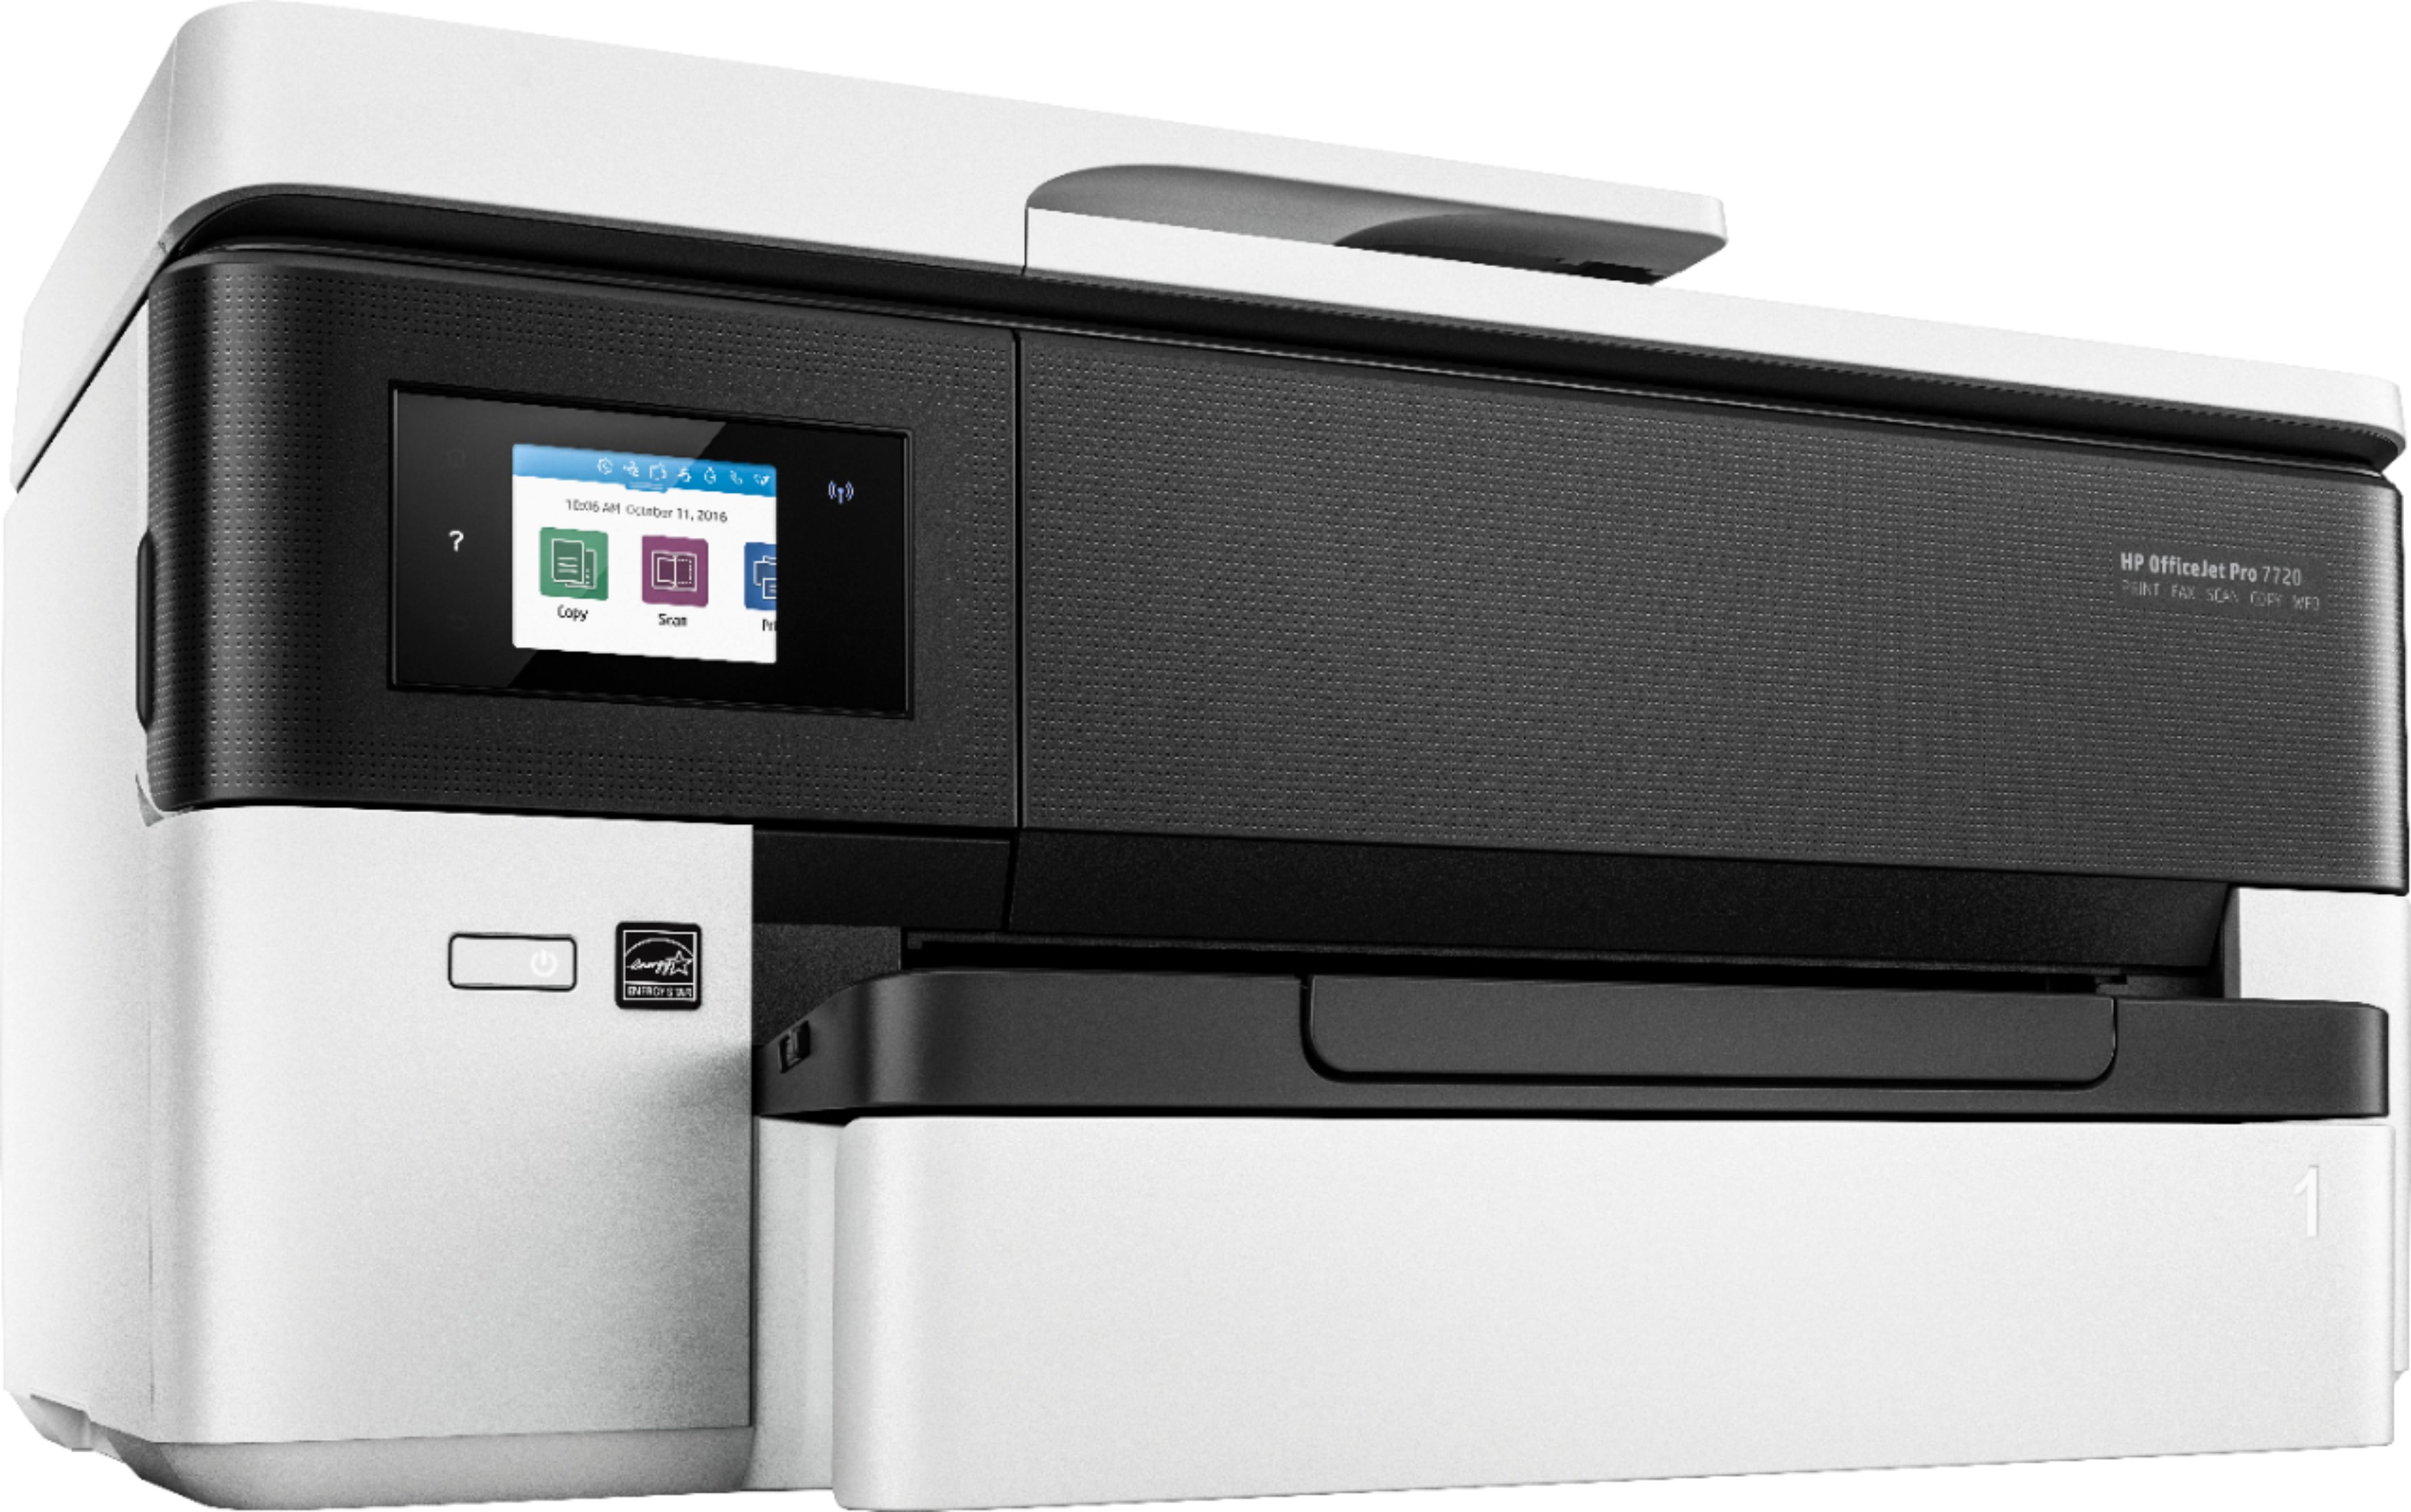 Best Buy: HP OfficeJet Pro 7720 Wireless All-In-One Inkjet Printer